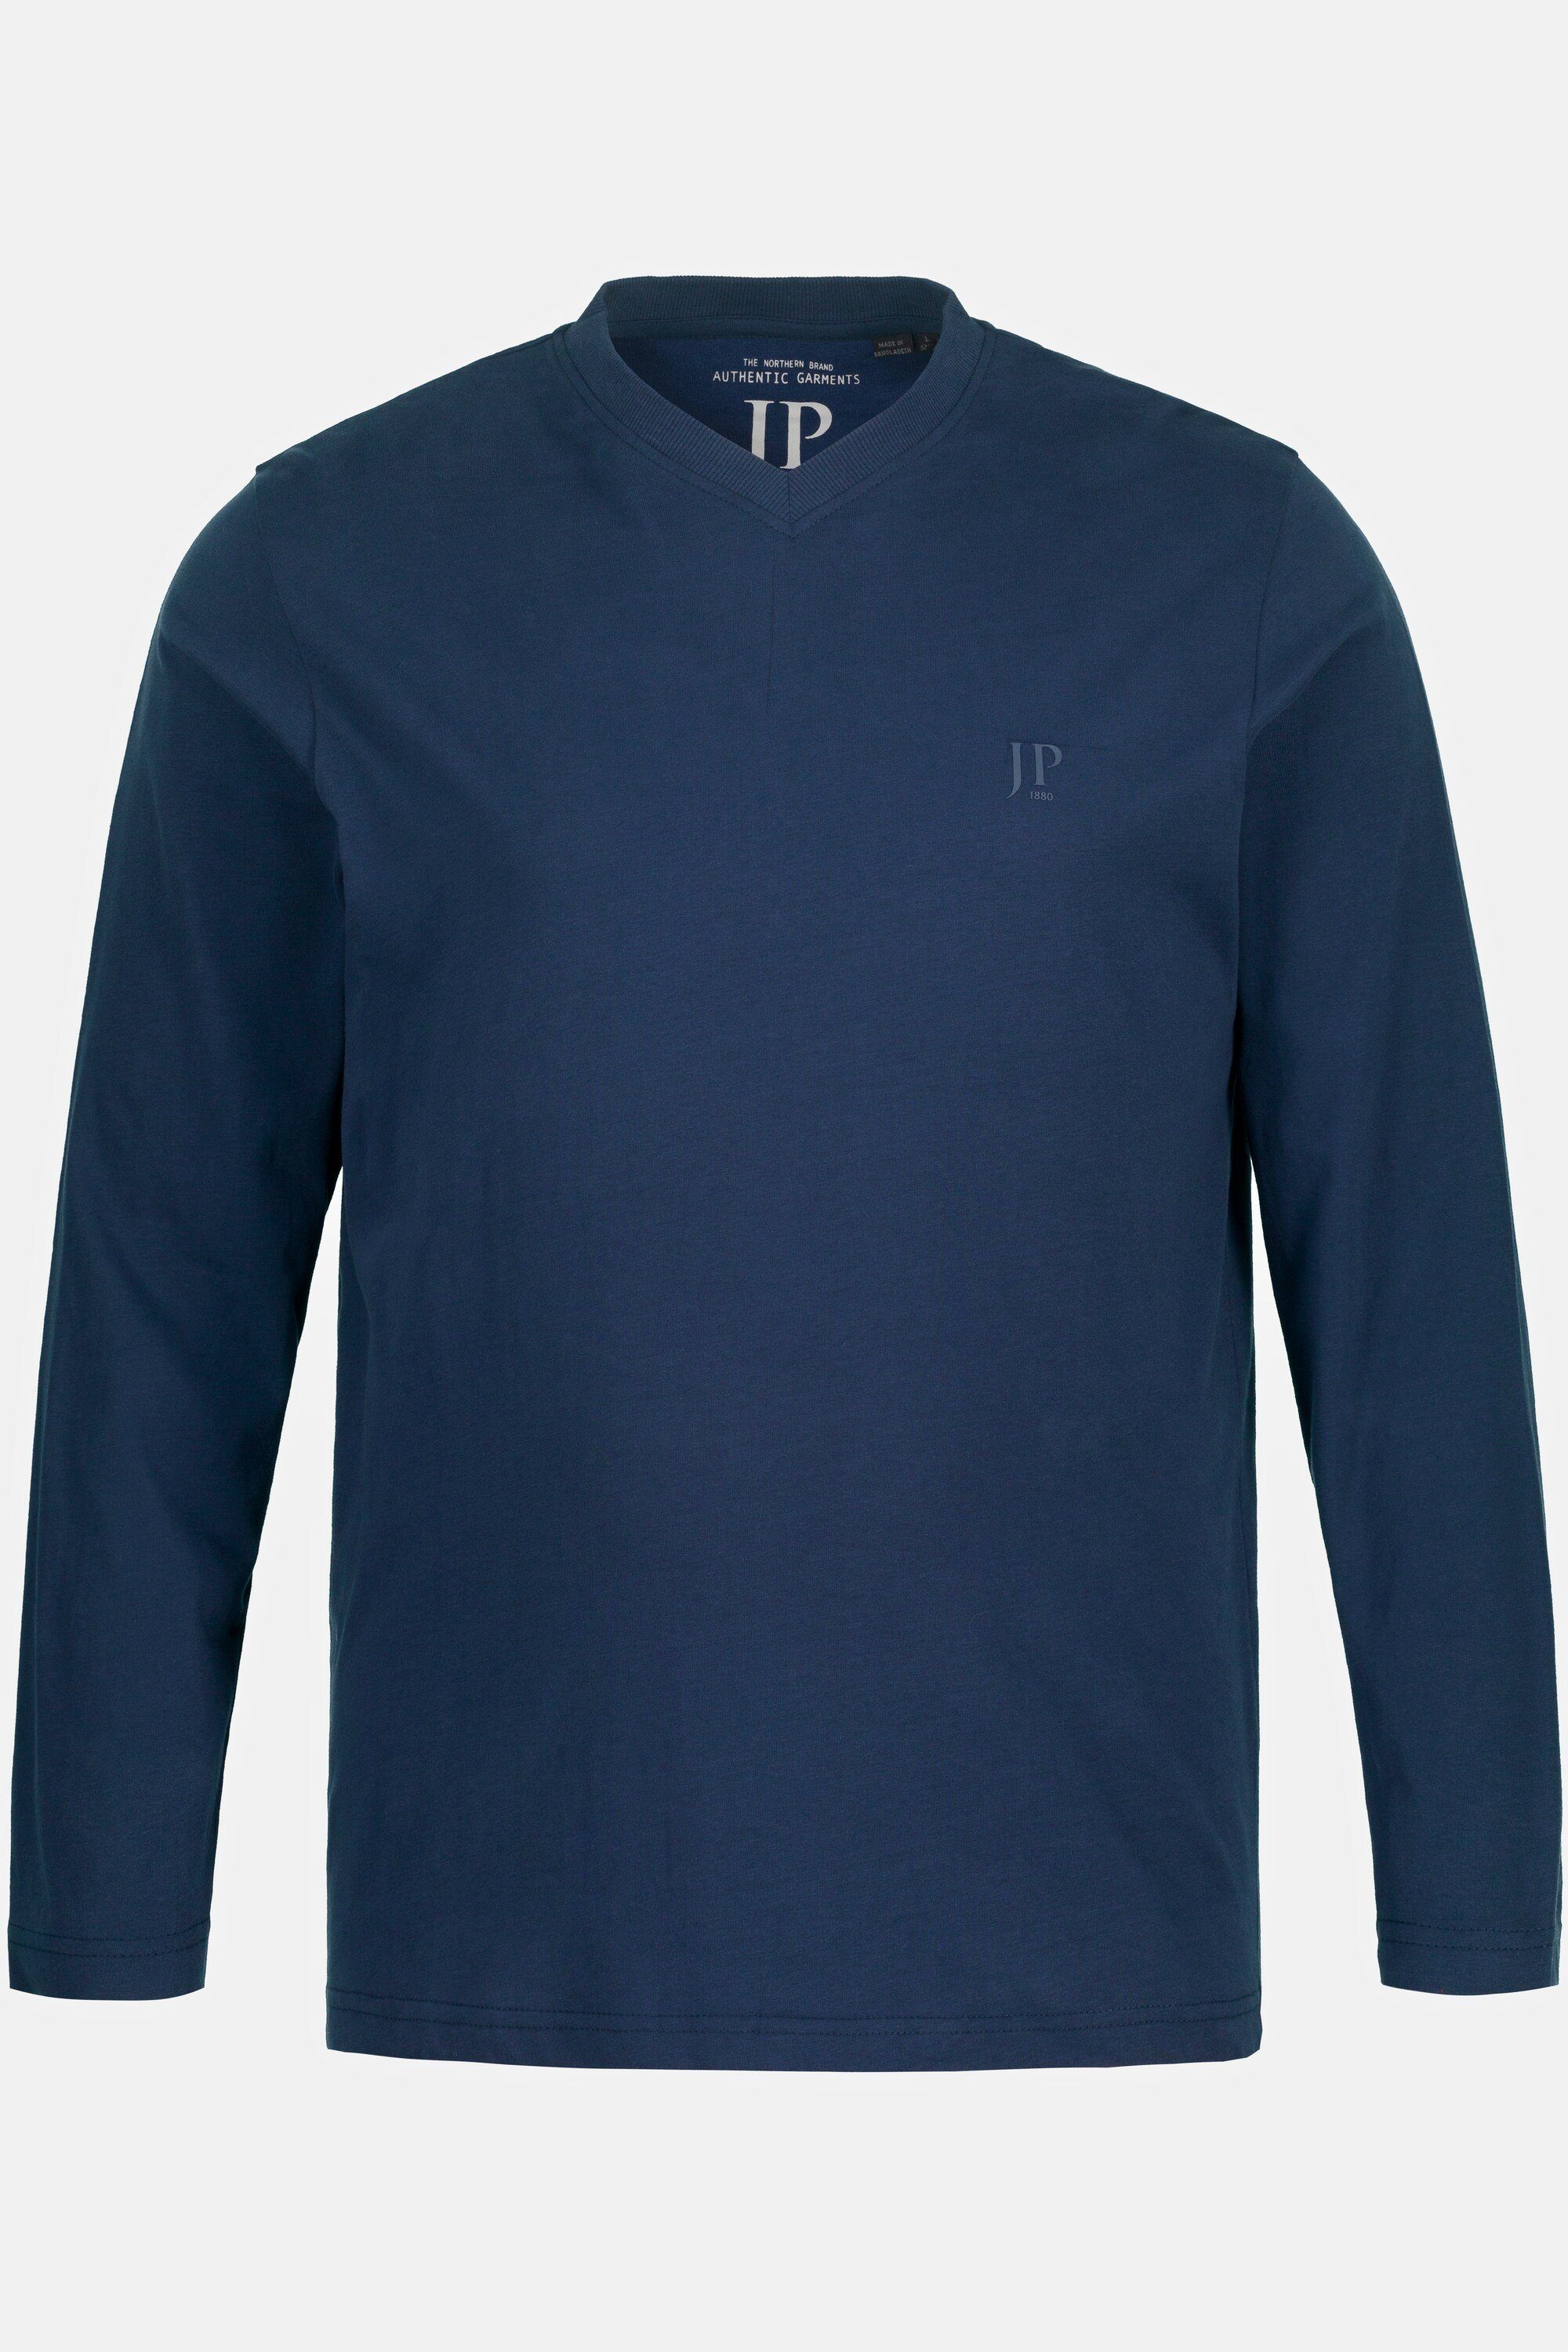 8 bis V-Ausschnitt T-Shirt T-Shirt JP1880 mattes nachtblau XL Langarm